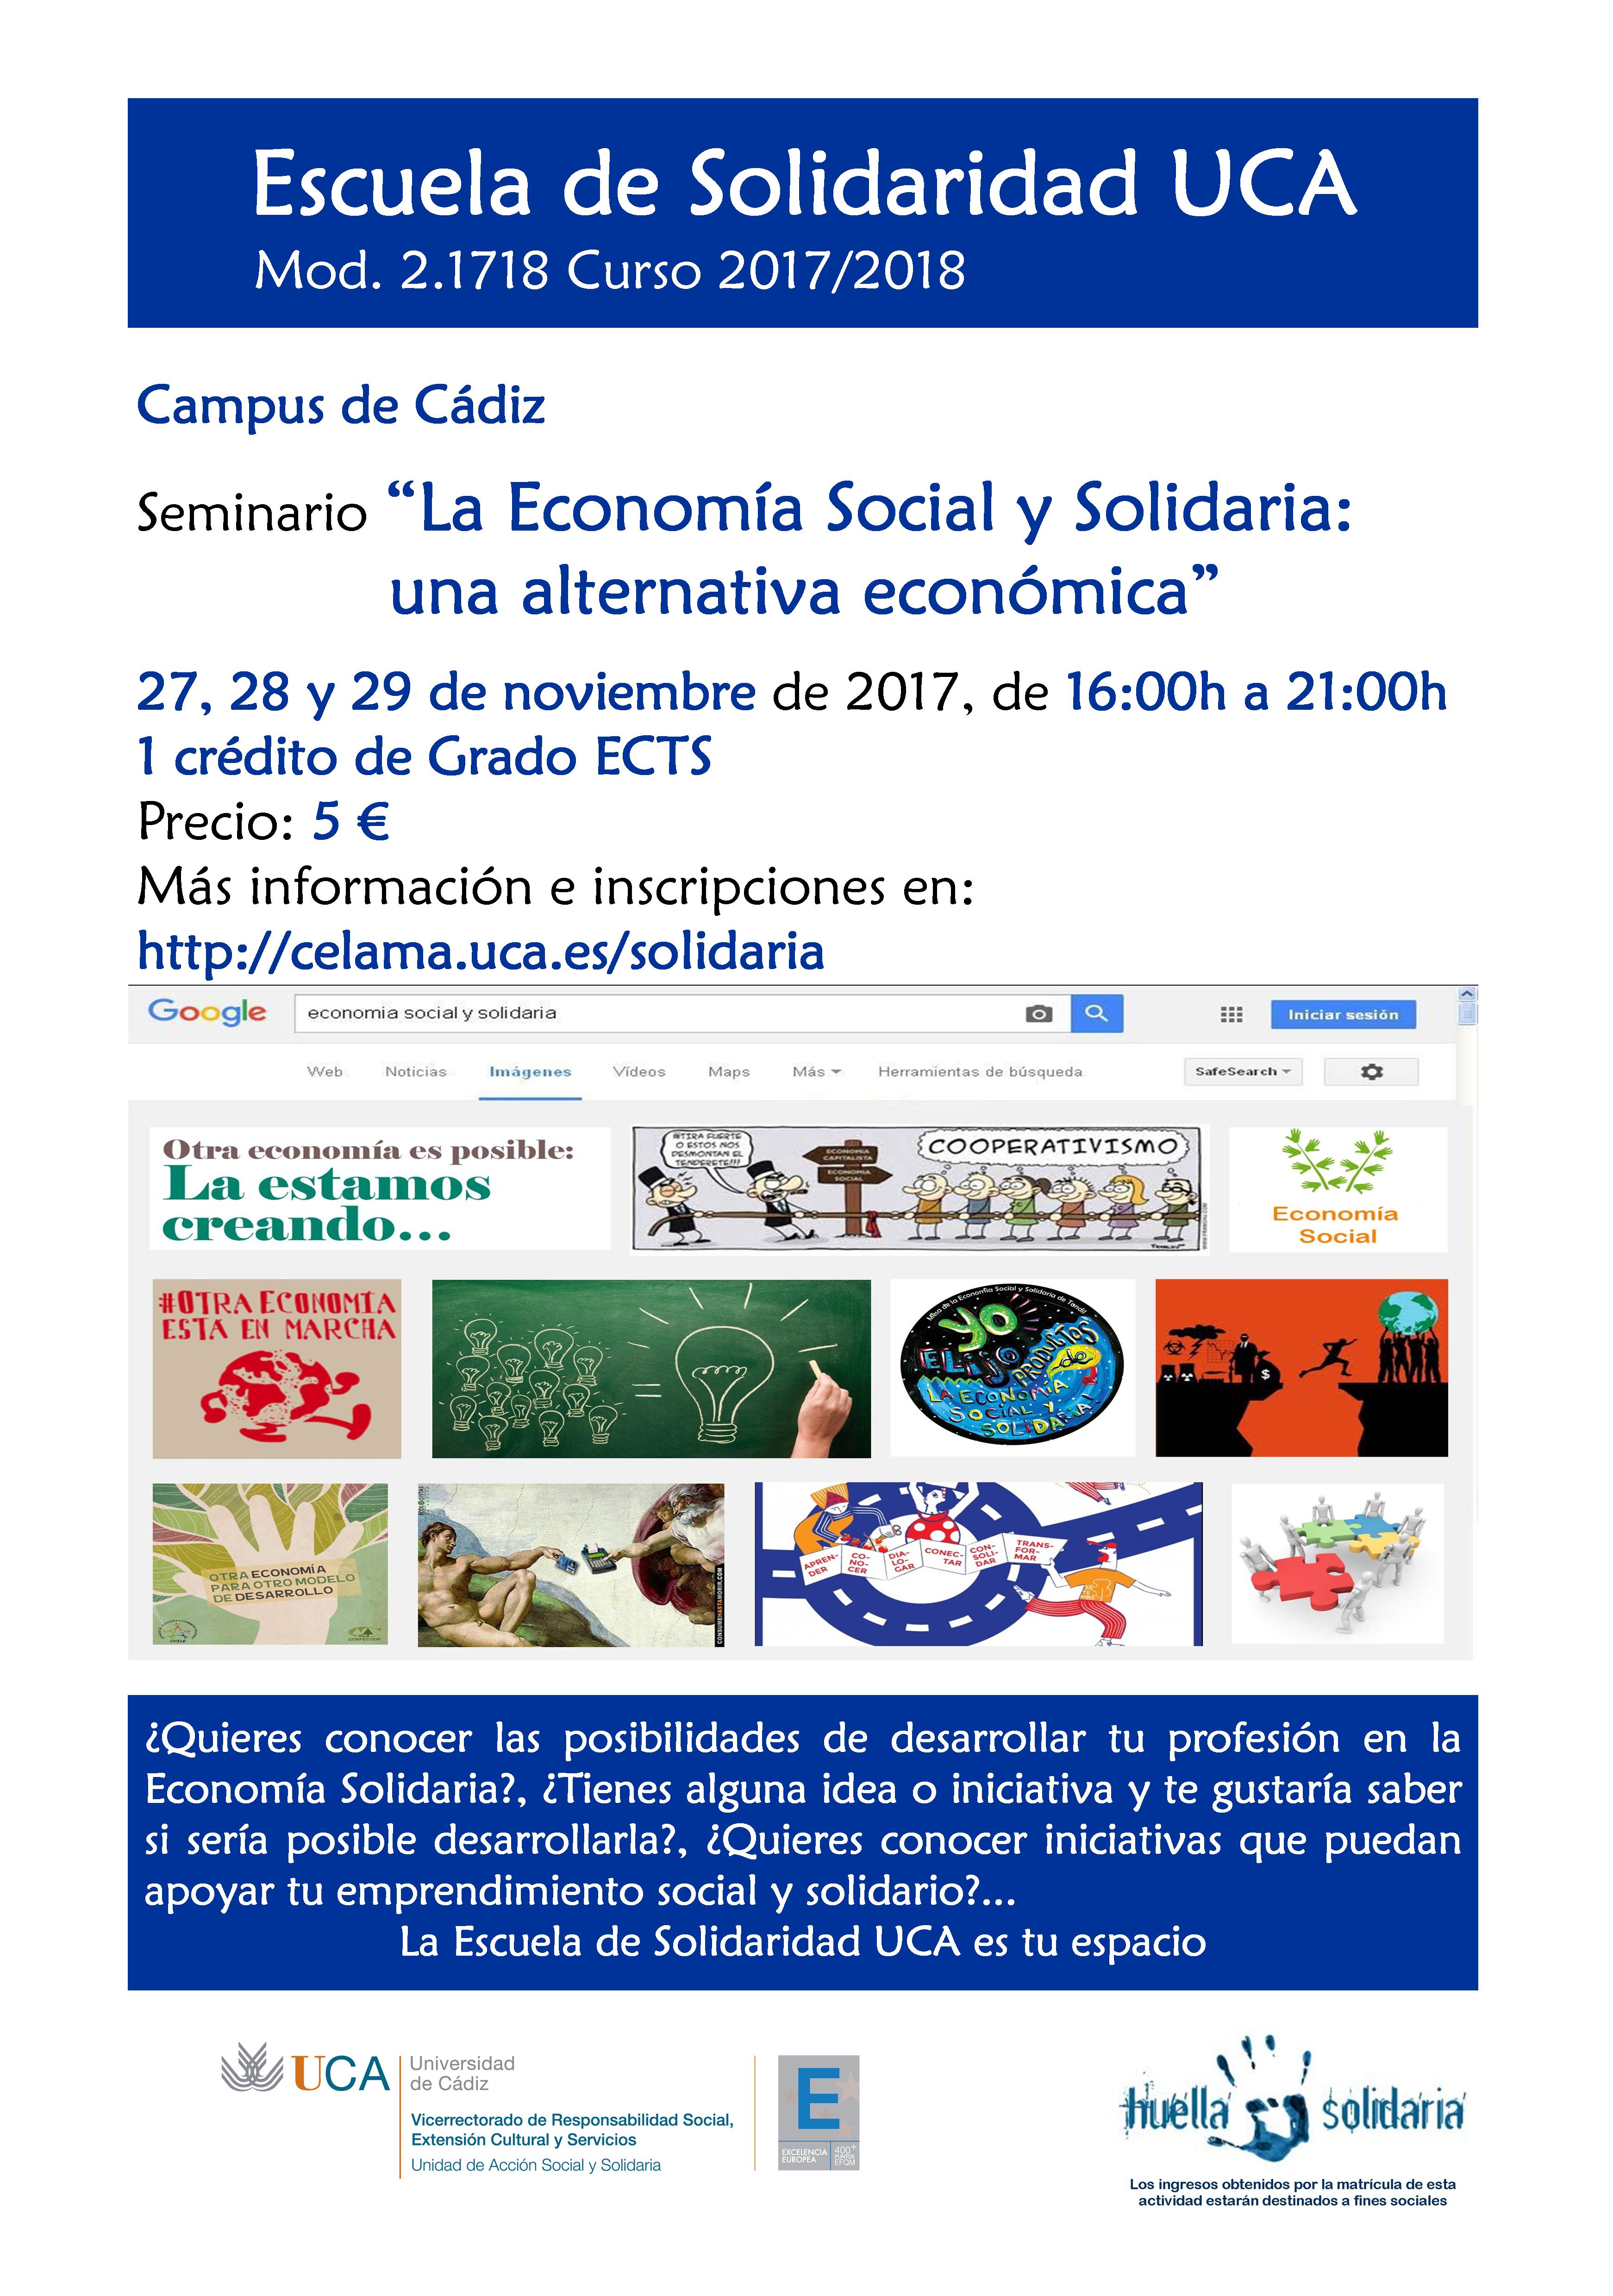 Campus de Cádiz. Seminario “La Economía Social y Solidaria: una alternativa económica”. 27, 28 y 29 de noviembre. Escuela de Solidaridad UCA. Módulo 2.1718